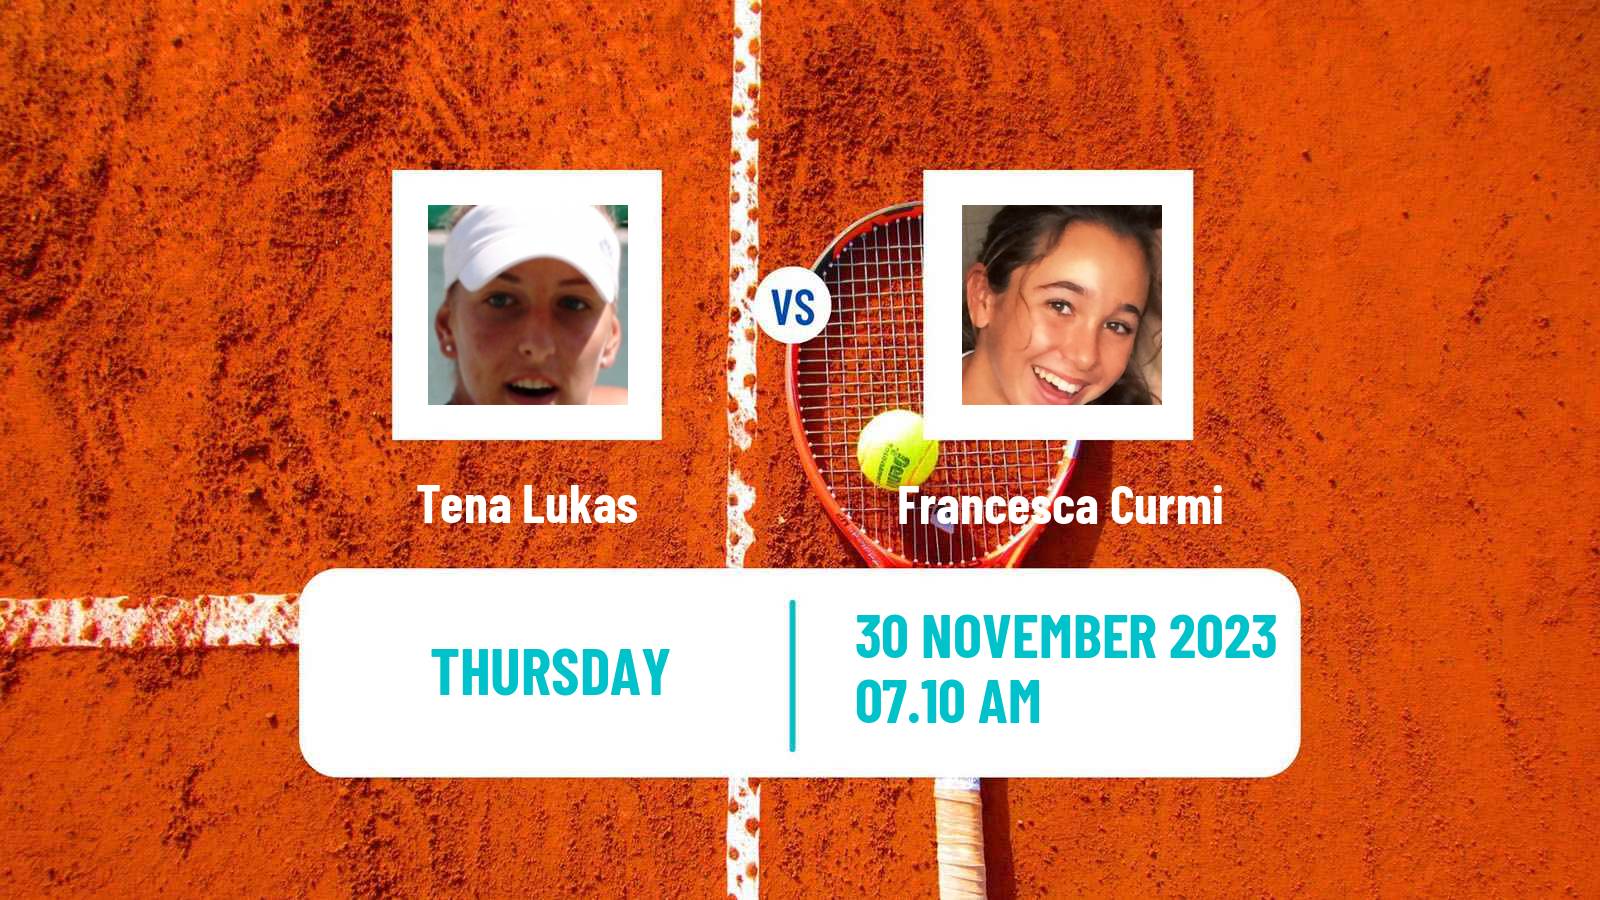 Tennis ITF W60 Trnava 3 Women Tena Lukas - Francesca Curmi